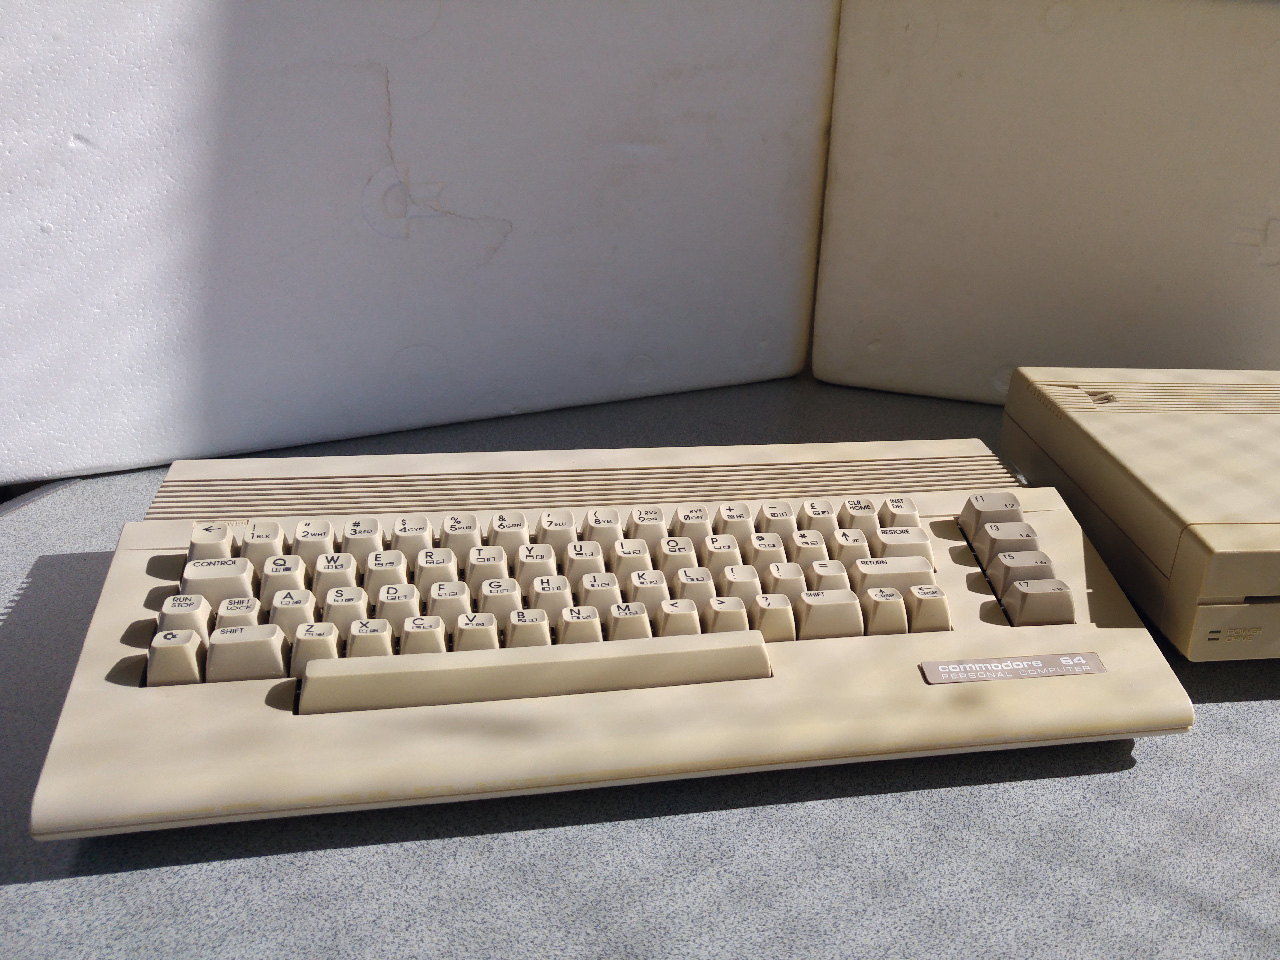 Der C64 ist zwar nicht mehr im besten Zustand, aber immerhin das Originalgerät, welches meine Frau als Kind verwendete. (Bild: Leopold Brodecky)